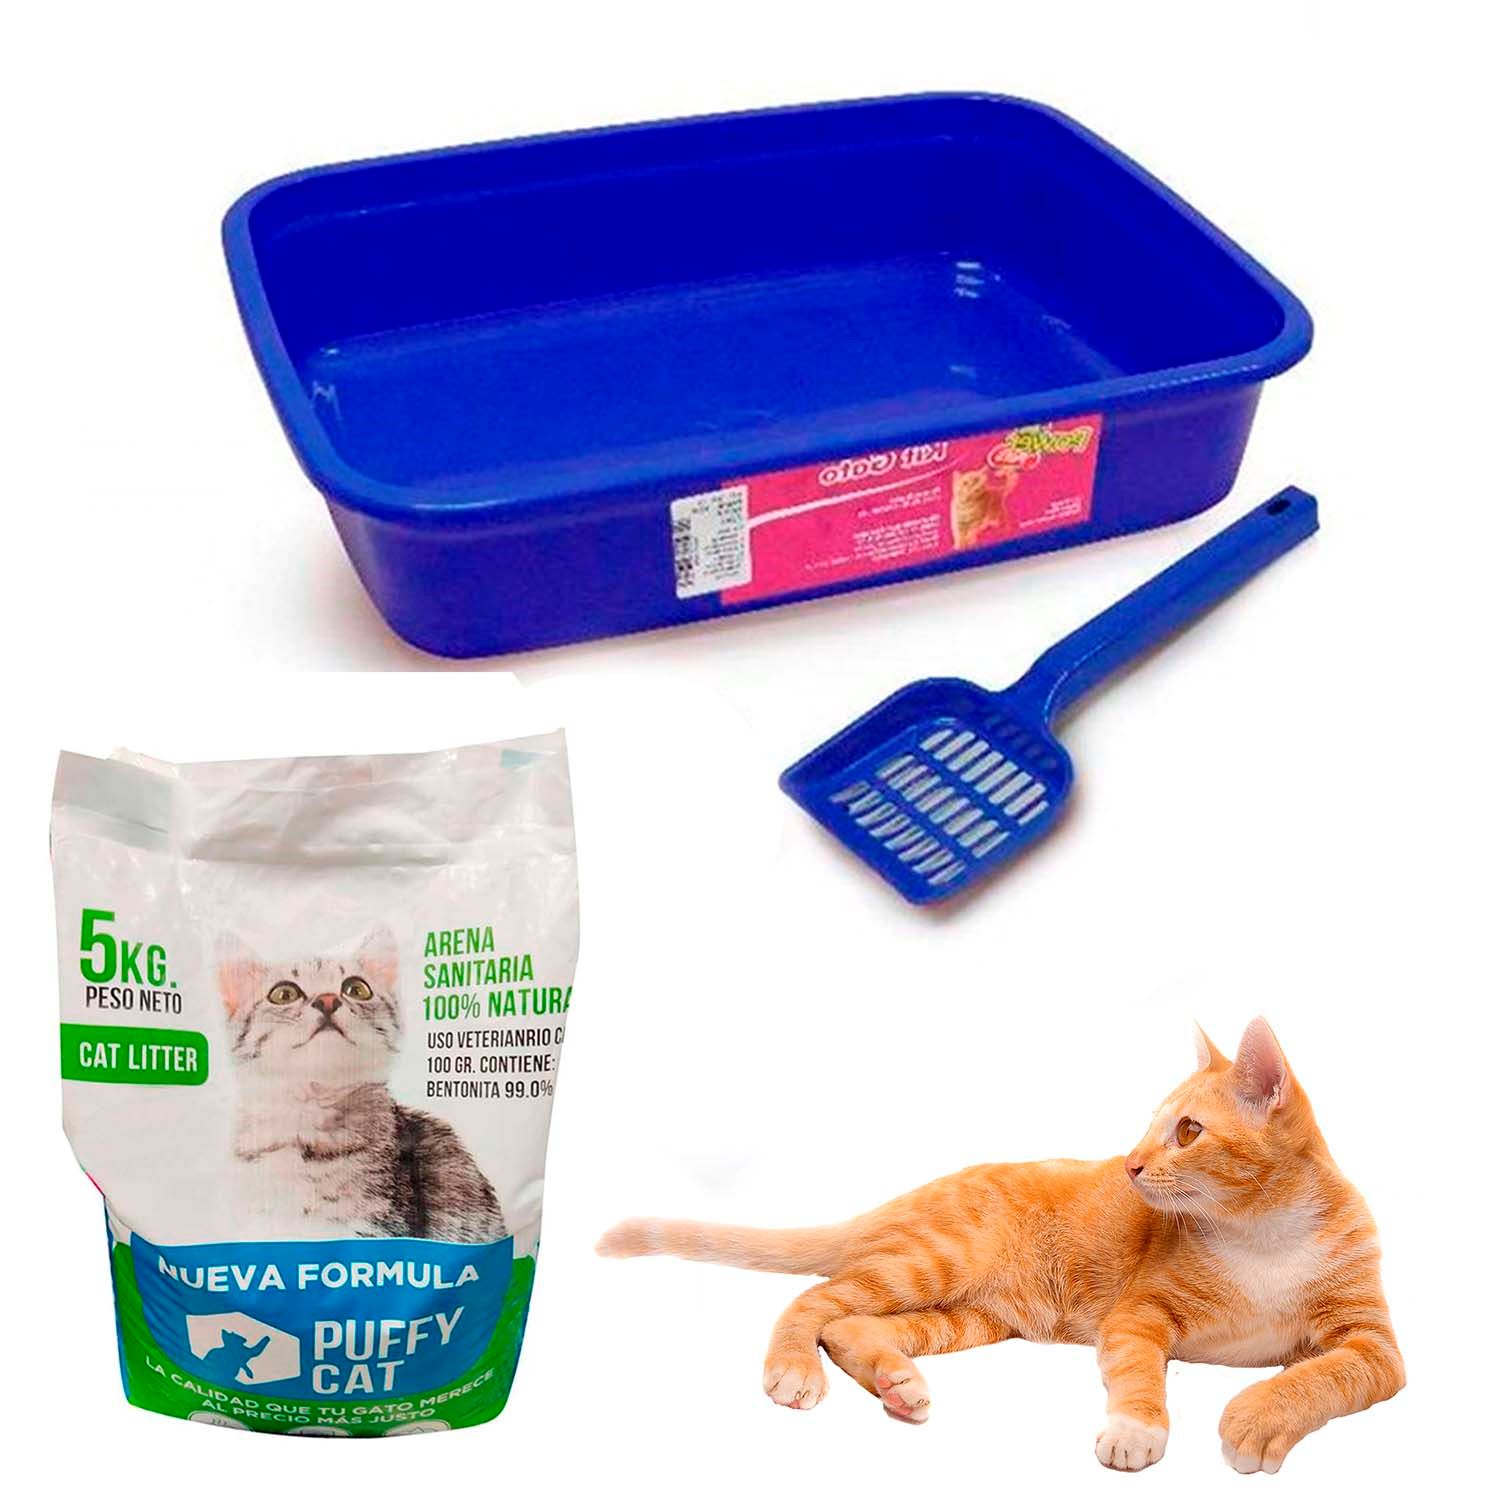 Comprar Bolsas arenero, Higiene gatos Mascota Home